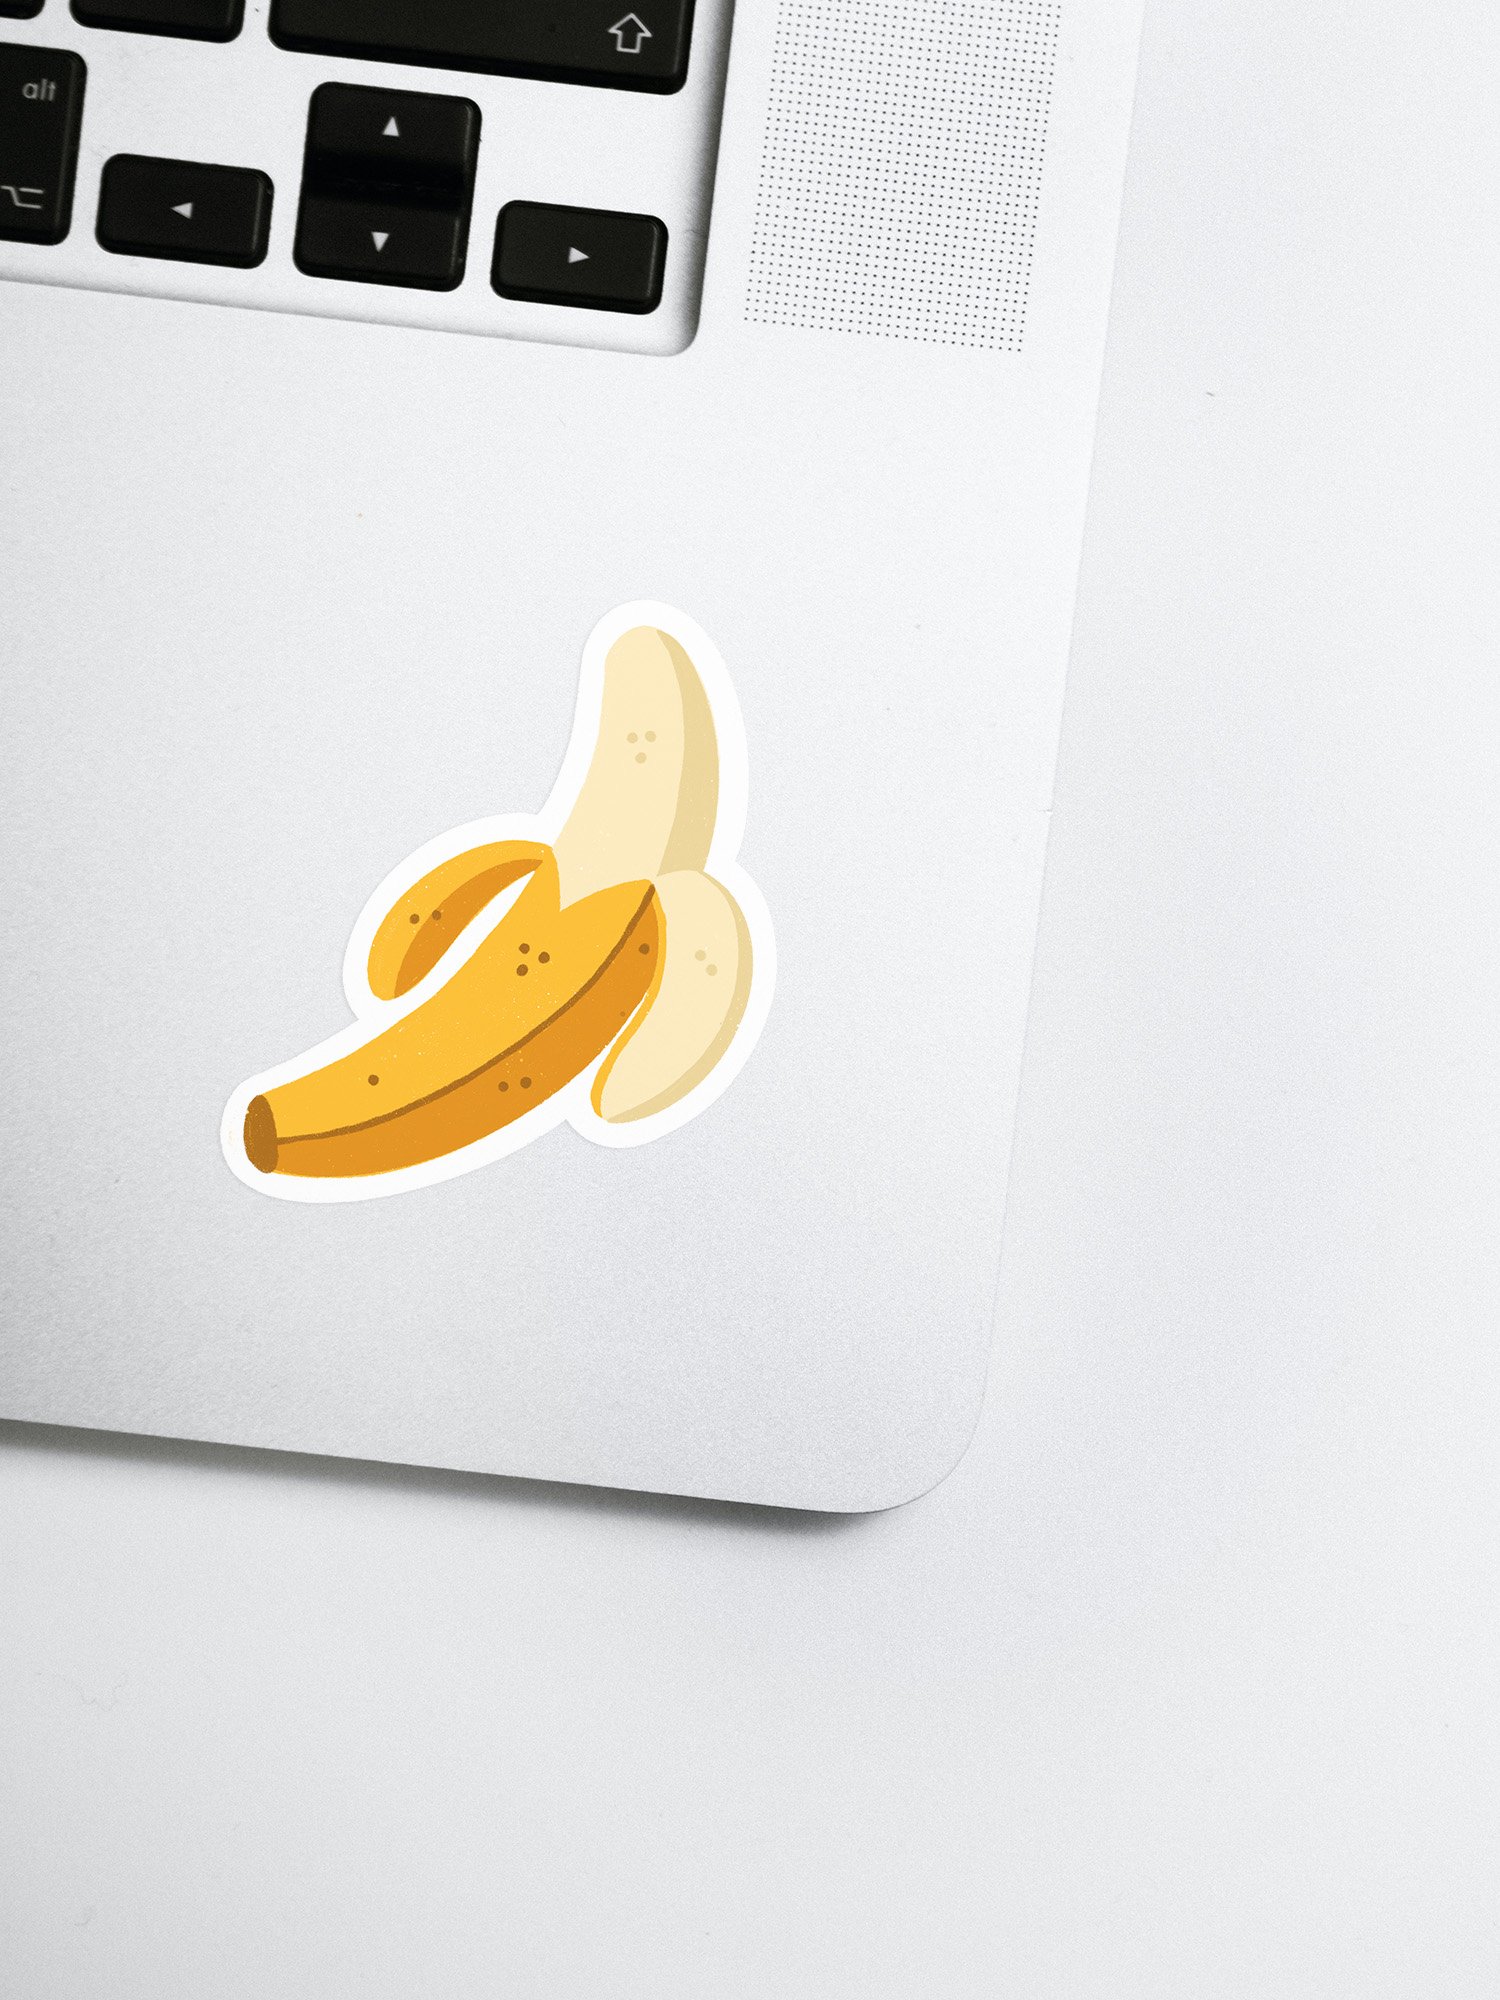 Banana_Sticker.jpg